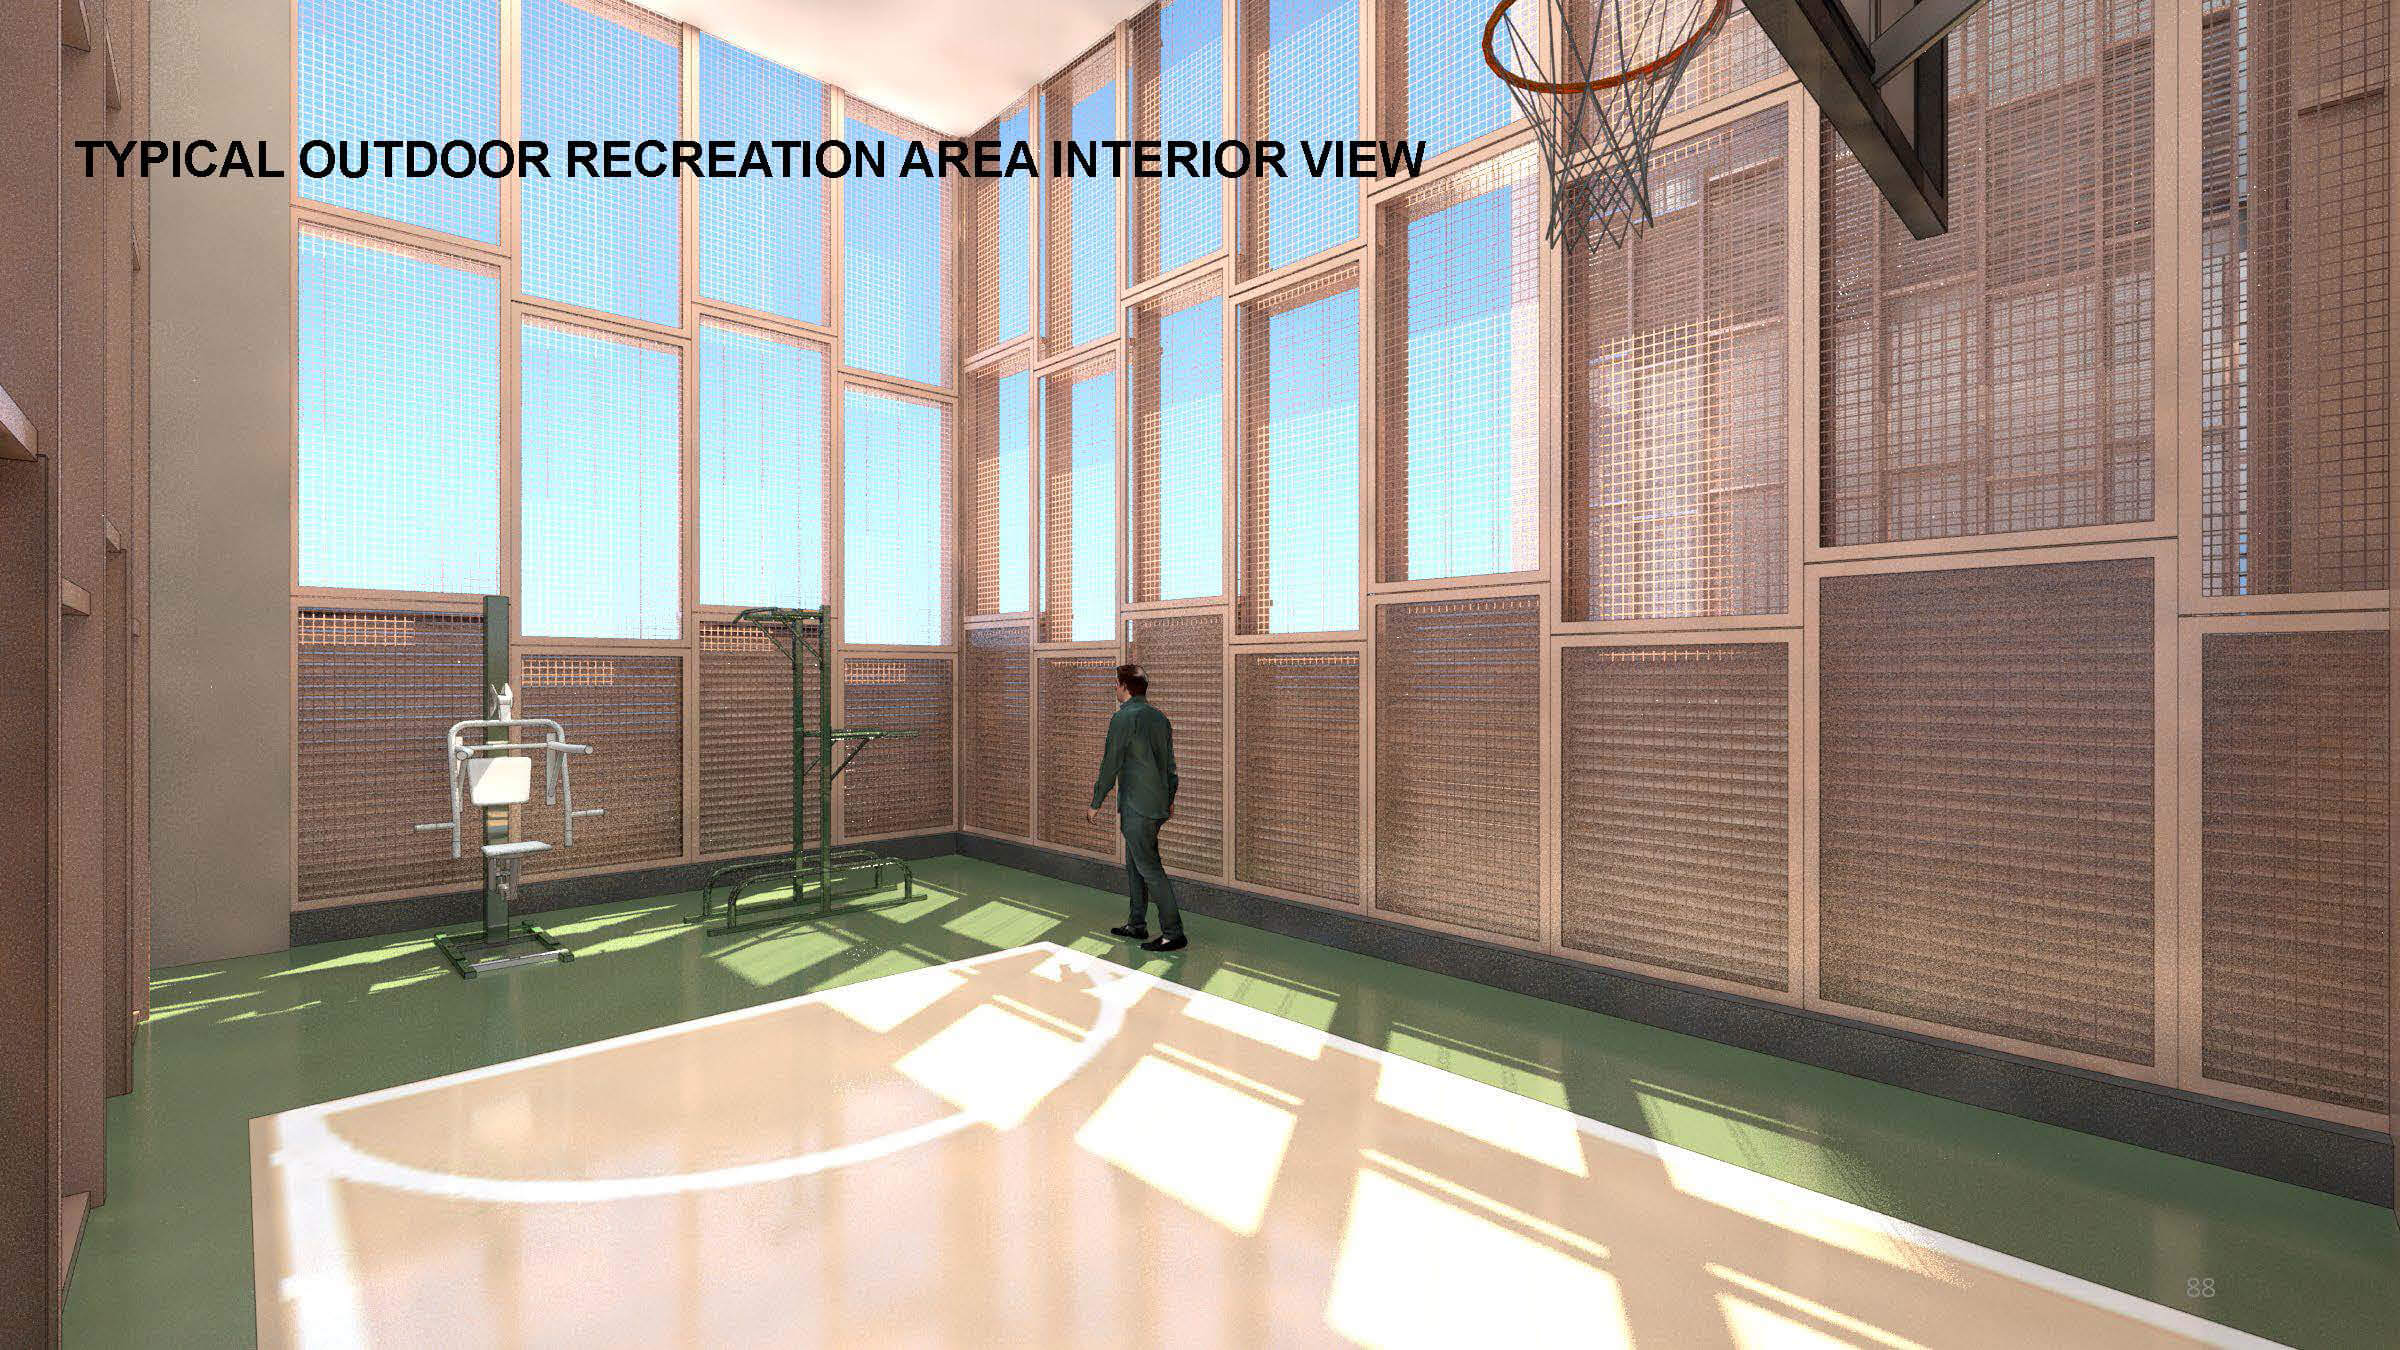 rendering showing indoor recreation area